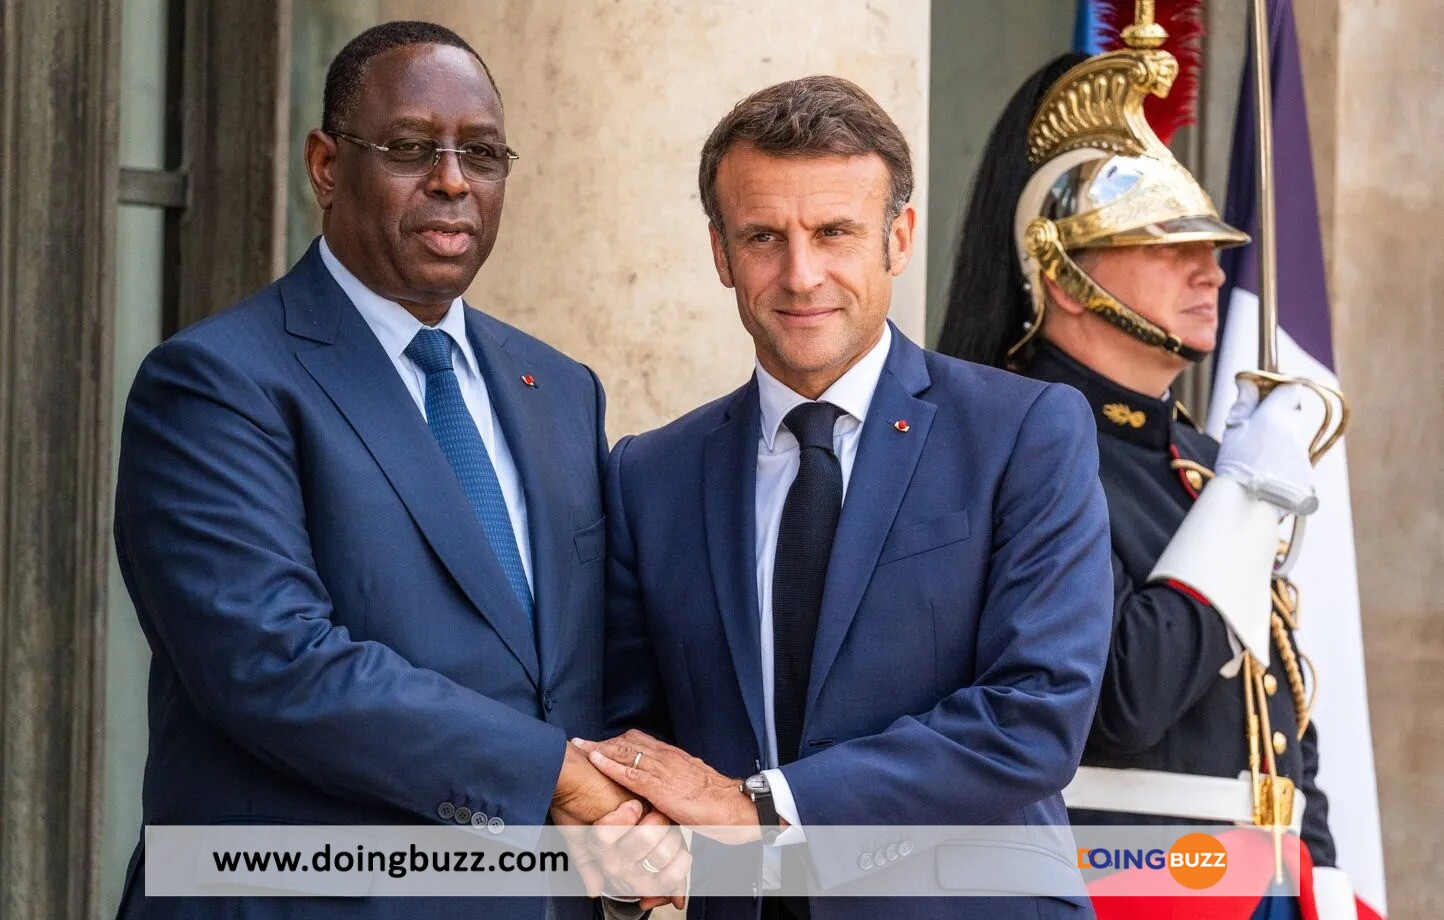 Les Dessous De La Rencontre Entre Macky Sall Et Emmanuel Macron Dévoilés